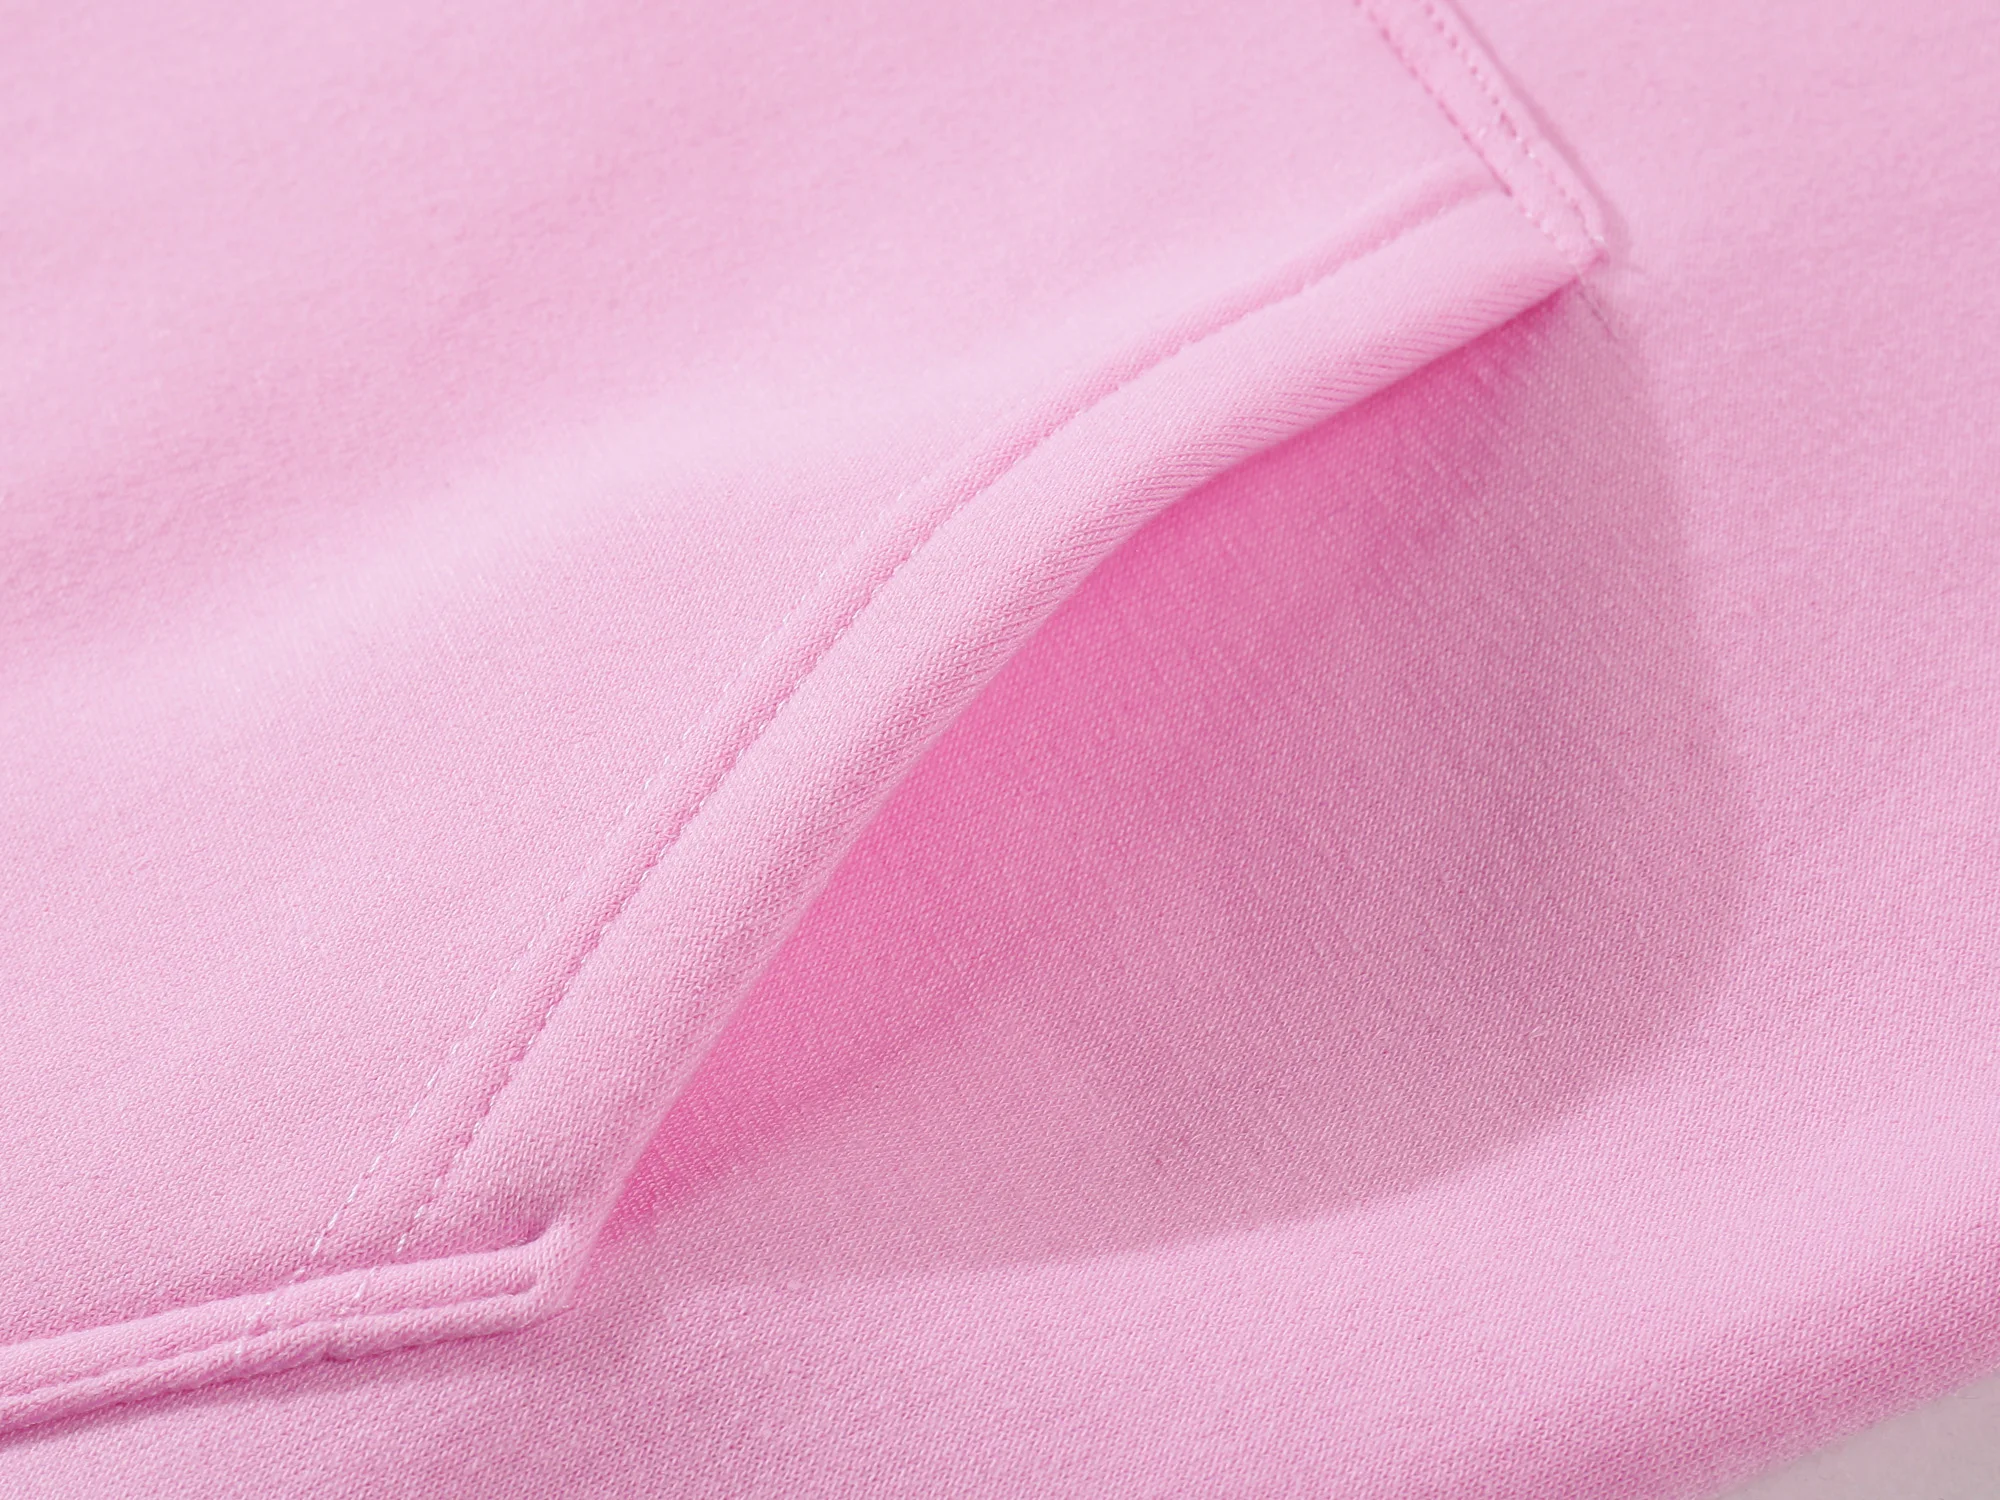 Marca Pink Jersey De Ropa Deportiva Casual Prendas De Mujer 2 Piezas De Poliéster Sudadera De Chándal De Sportswear Ejecución De Ropa 1